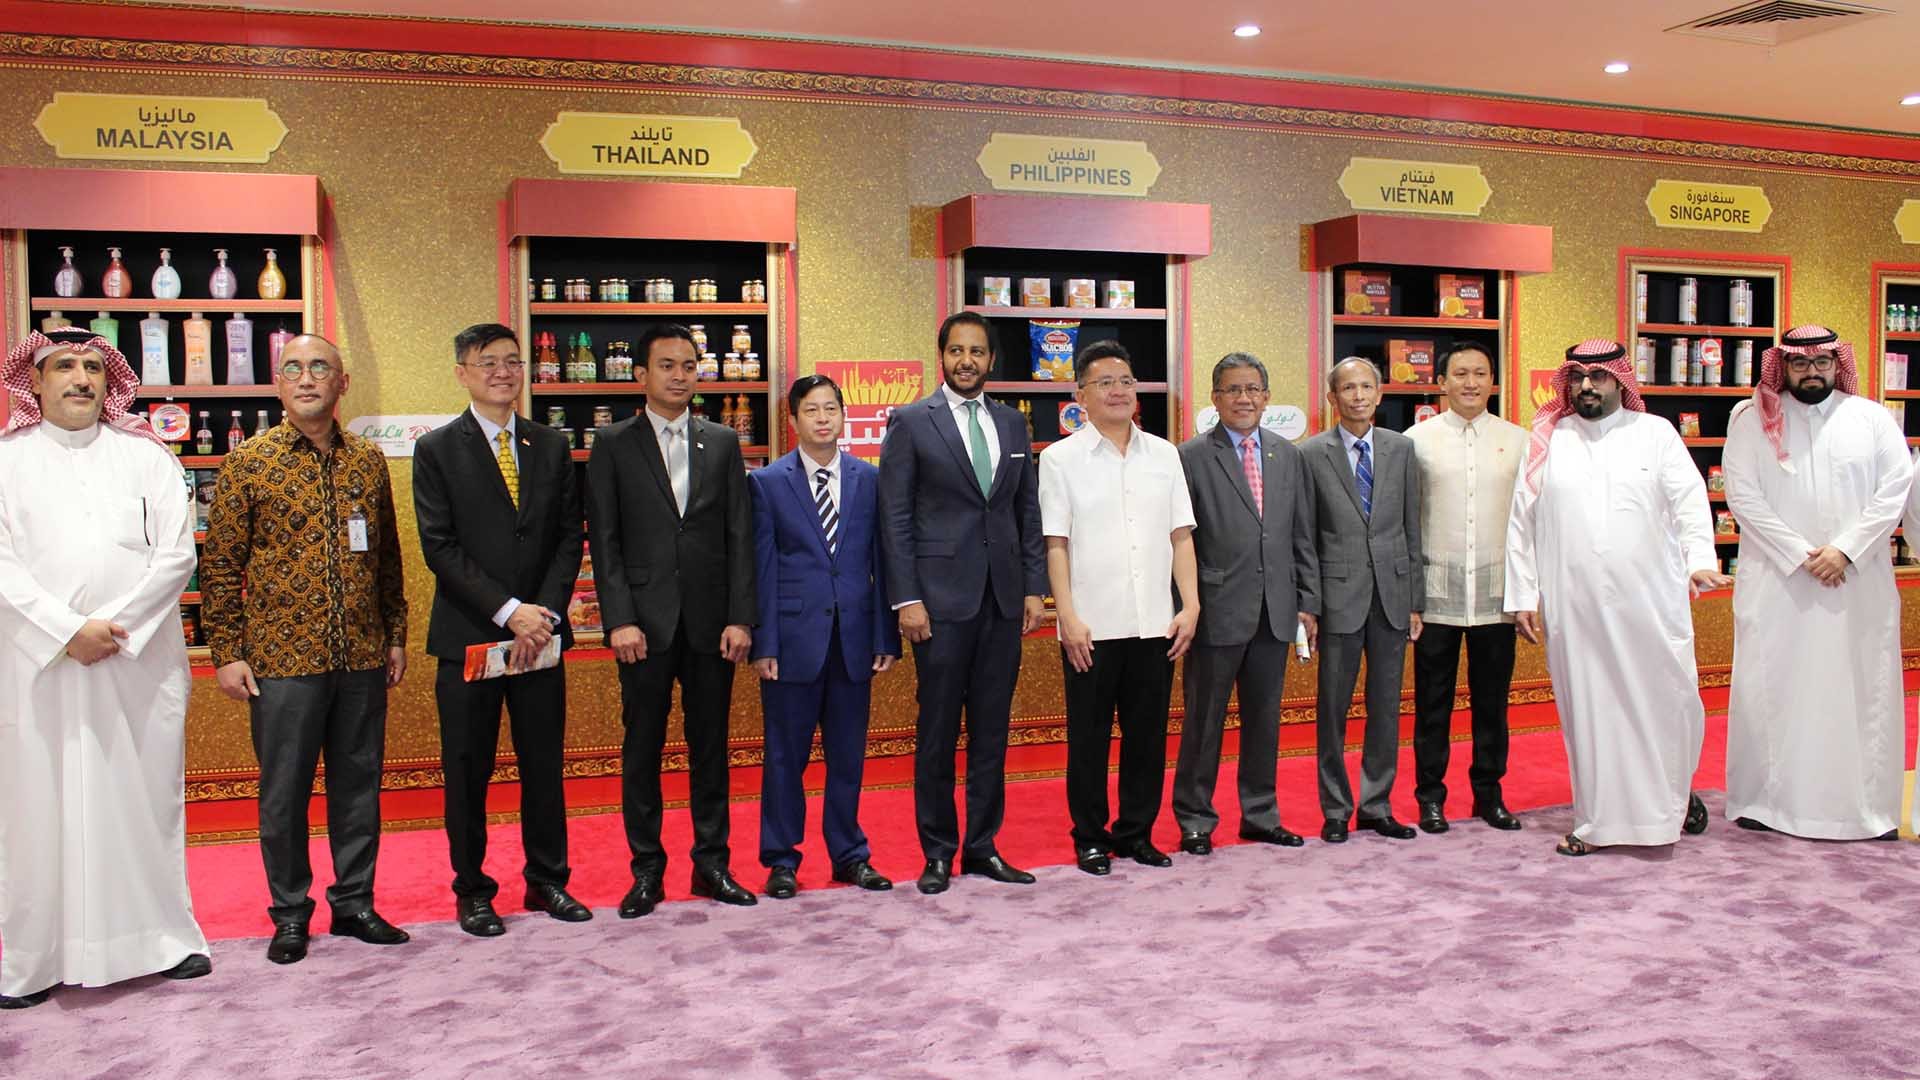 Các Đại sứ và đại diện Lulu chụp ảnh trước các sản phẩm của ASEAN